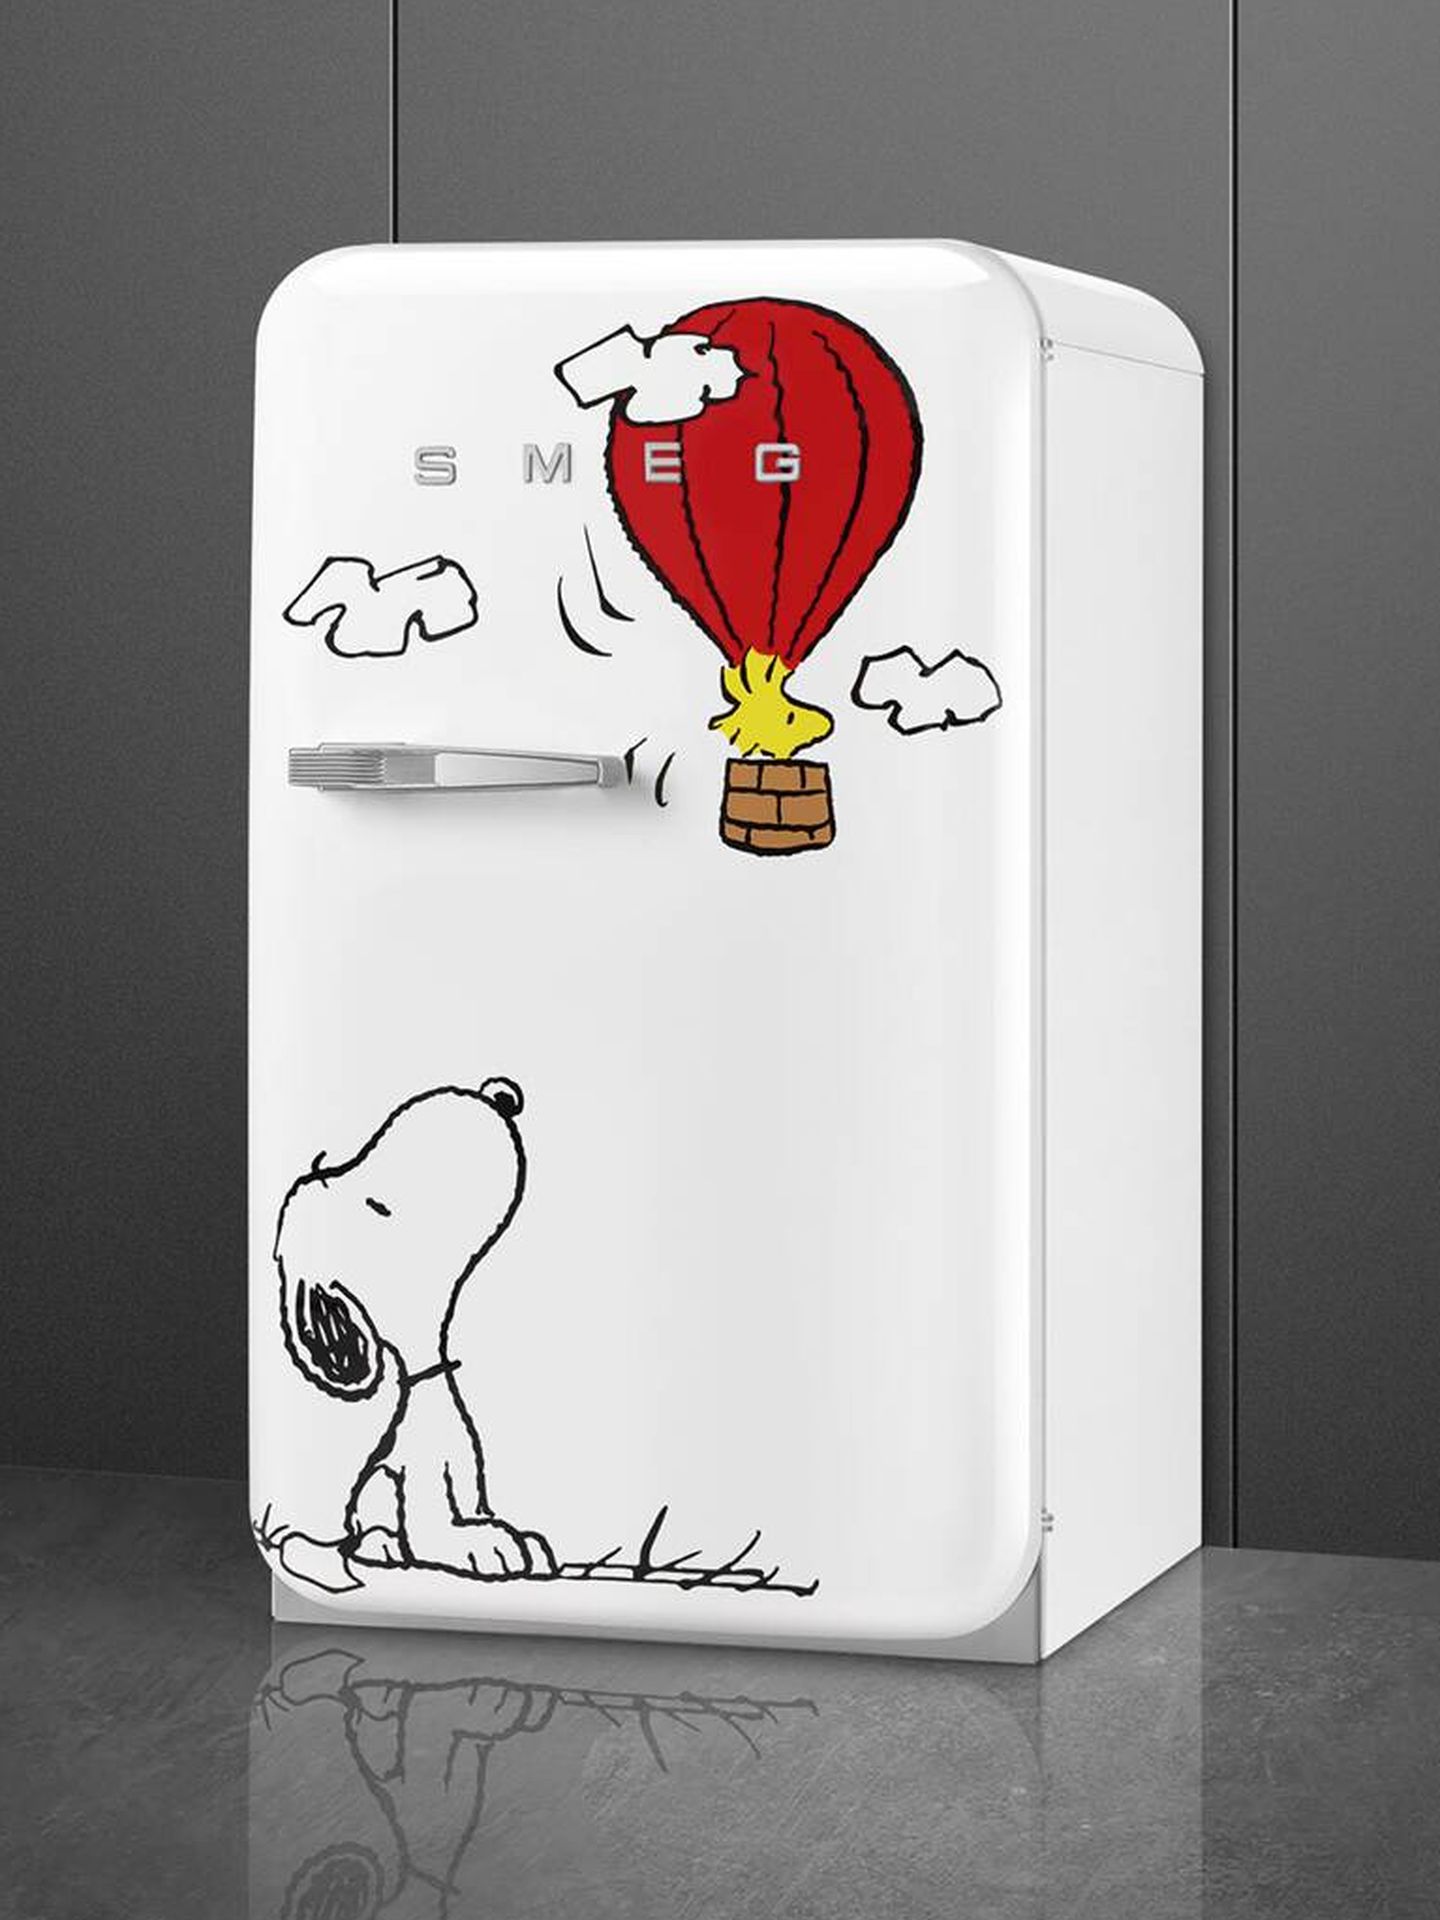 FAB10: el Smeg de Snoopy. (Cortesía)